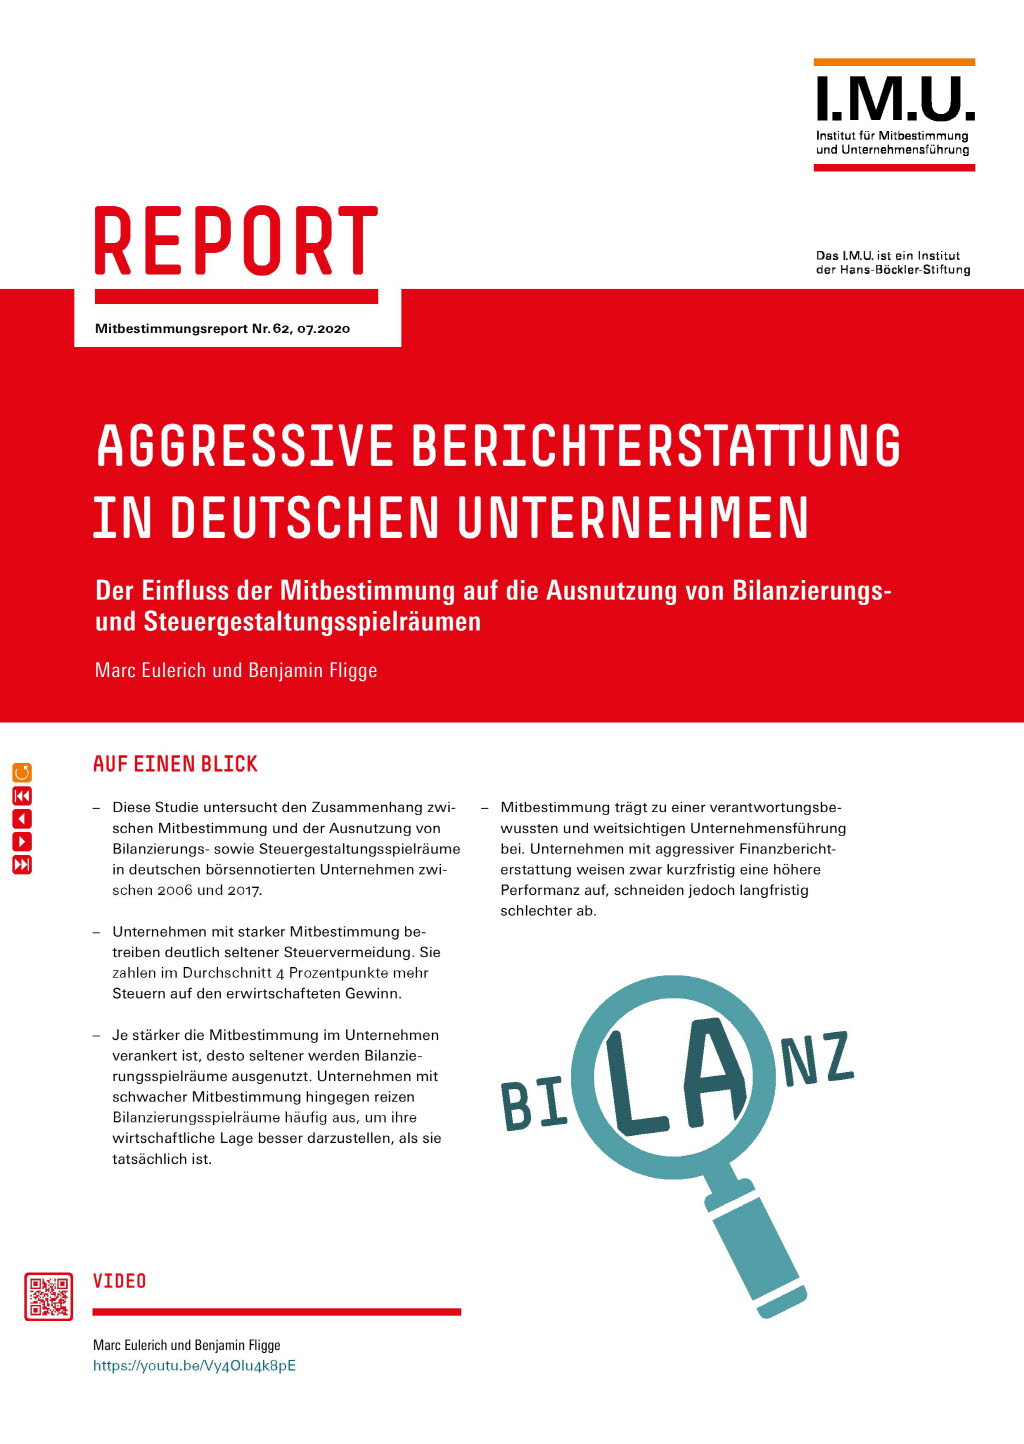 Aggressive Berichterstattung in deutschen Unternehmen